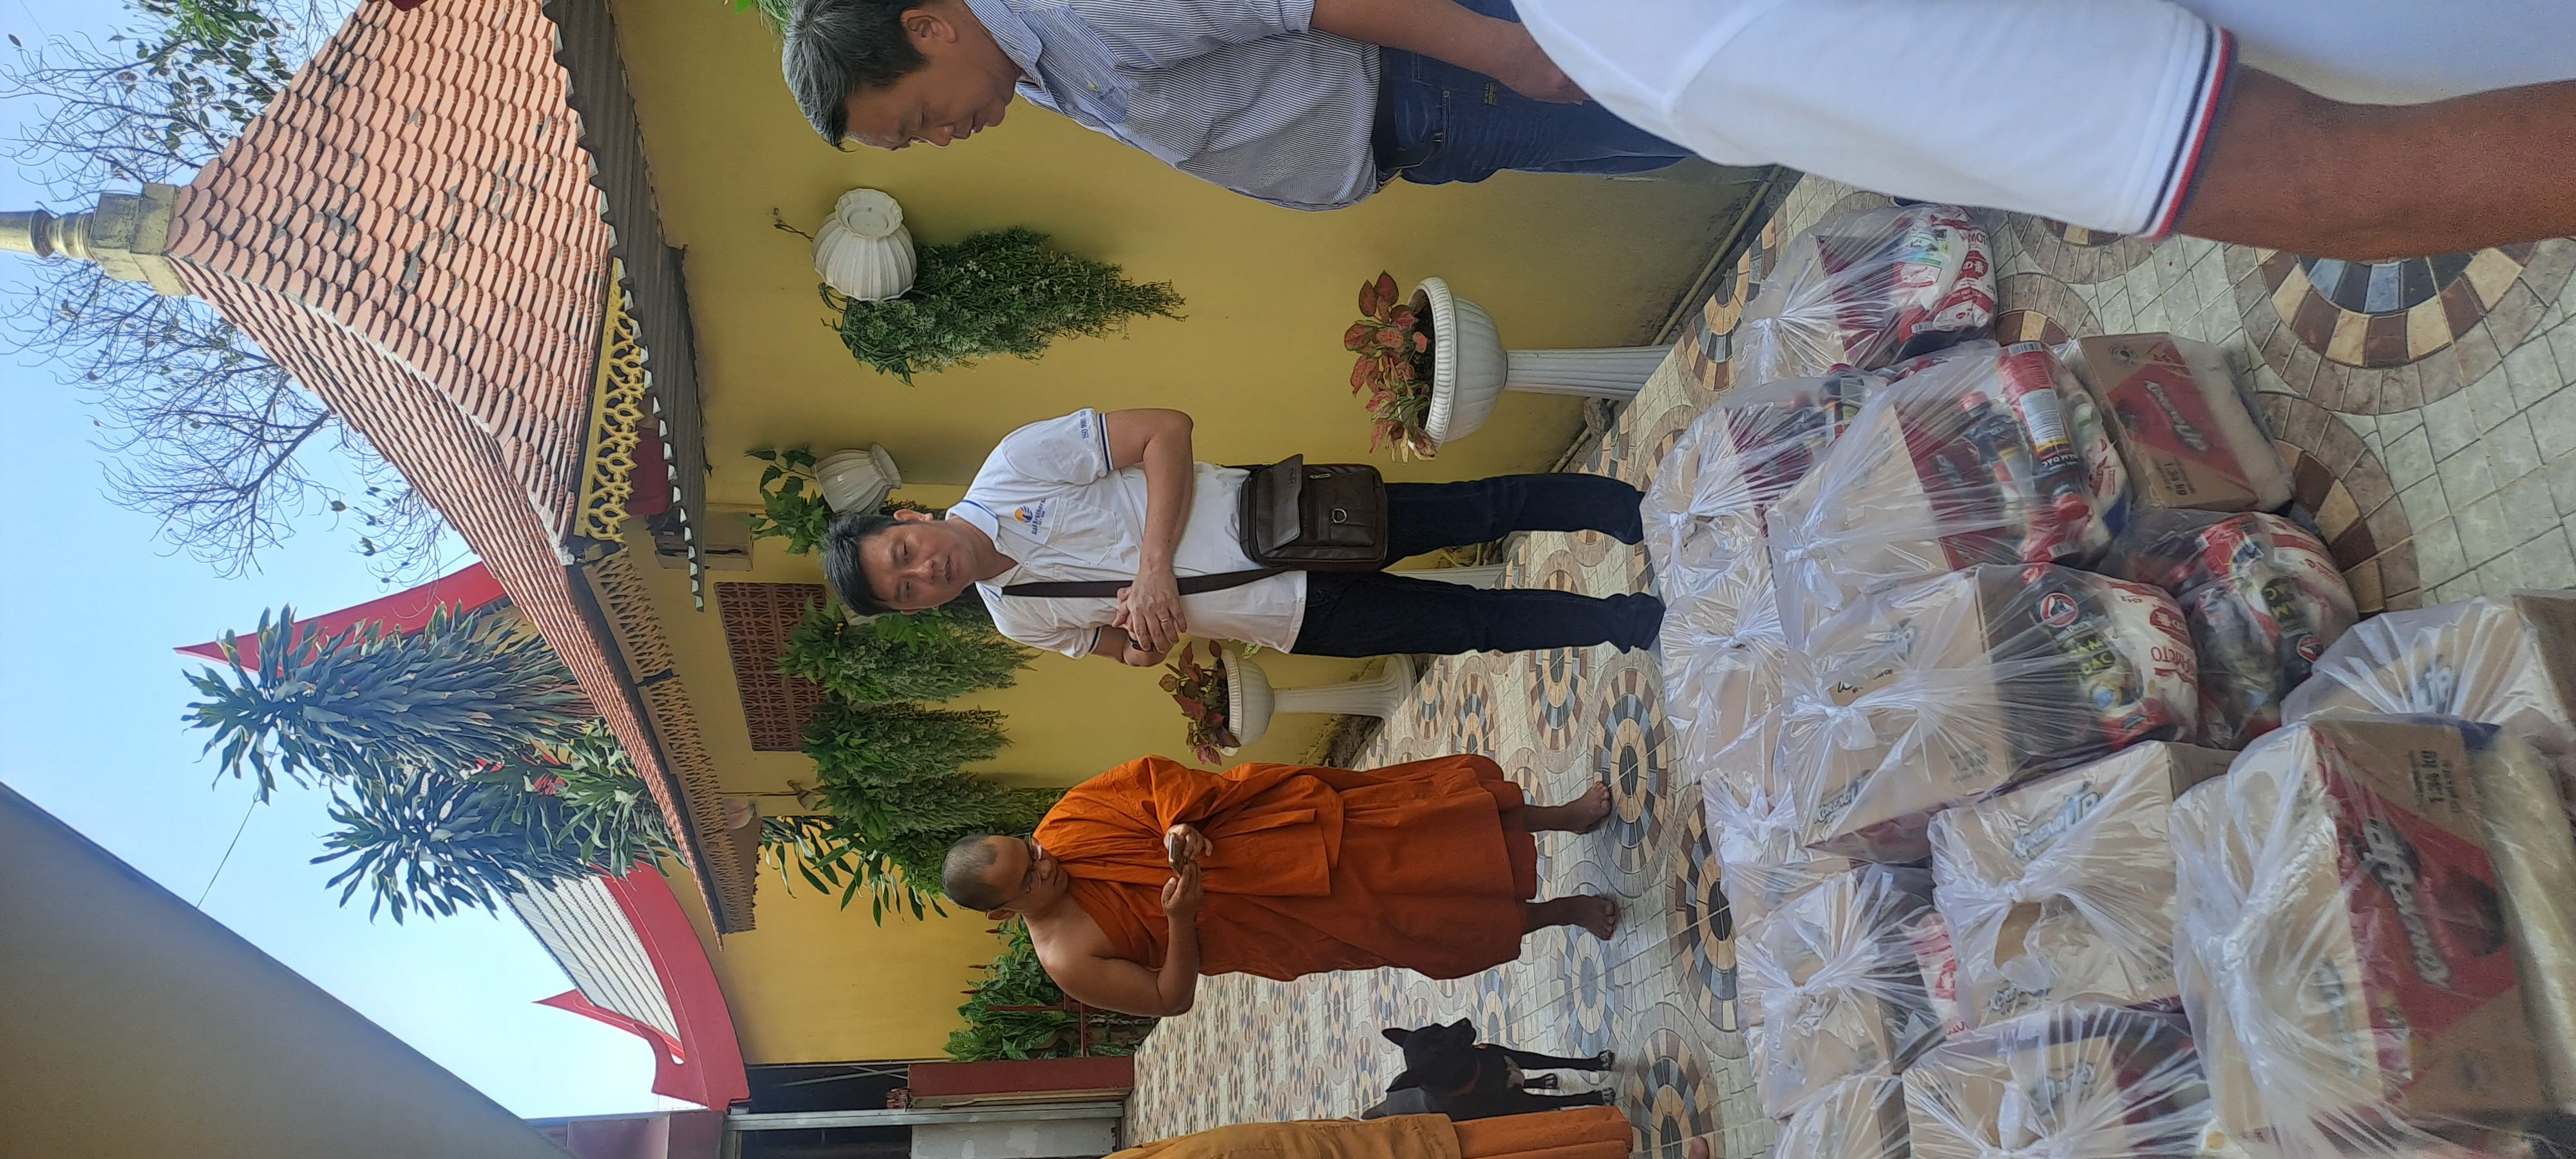 Siam Brothers Việt Nam hỗ trợ 50 phần quà cho chùa Huệ Hưng